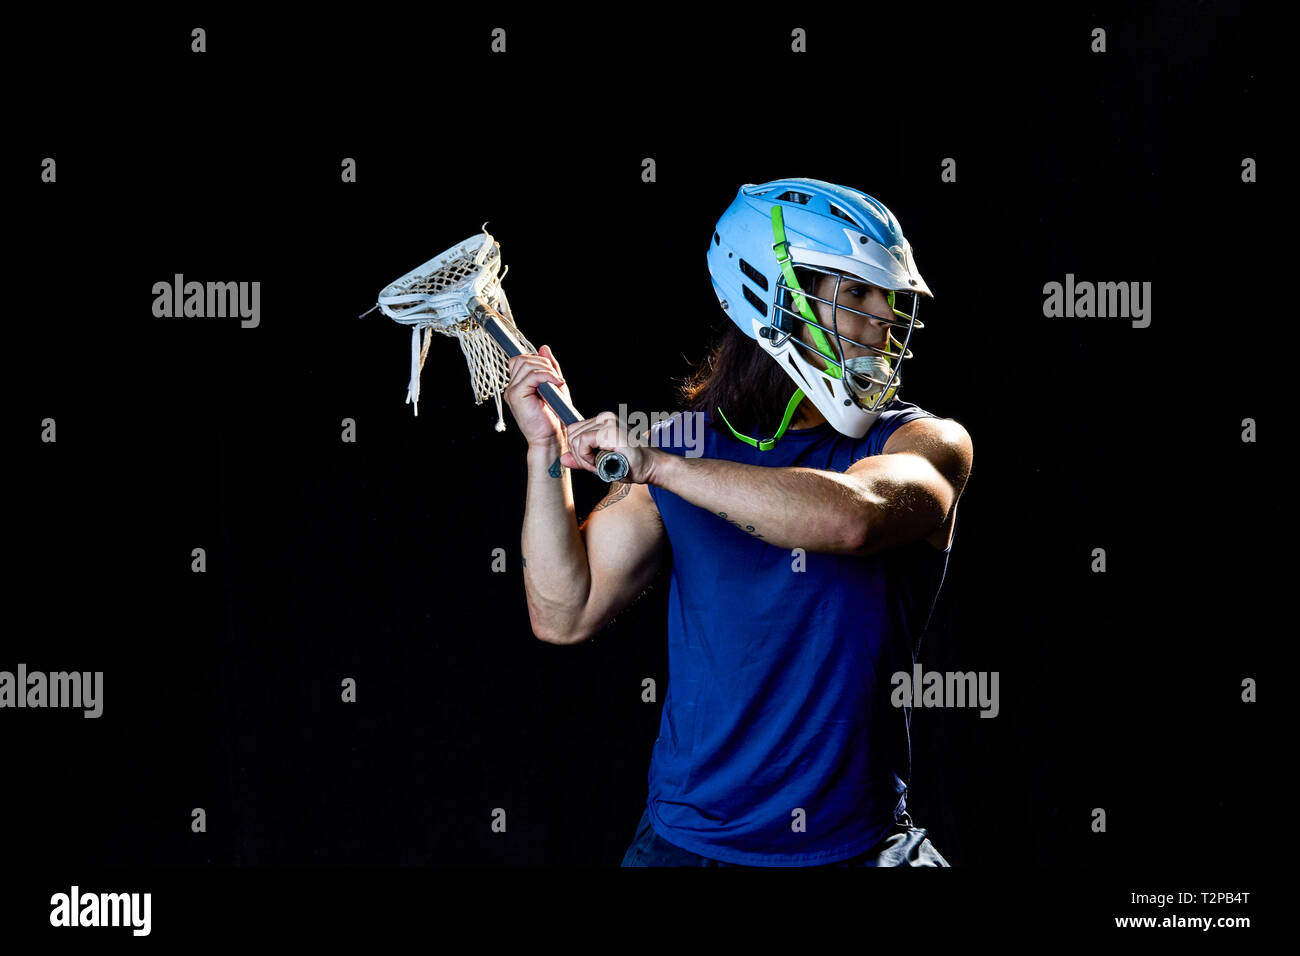 Ritratto di lacrosse player, sfondo nero Foto Stock